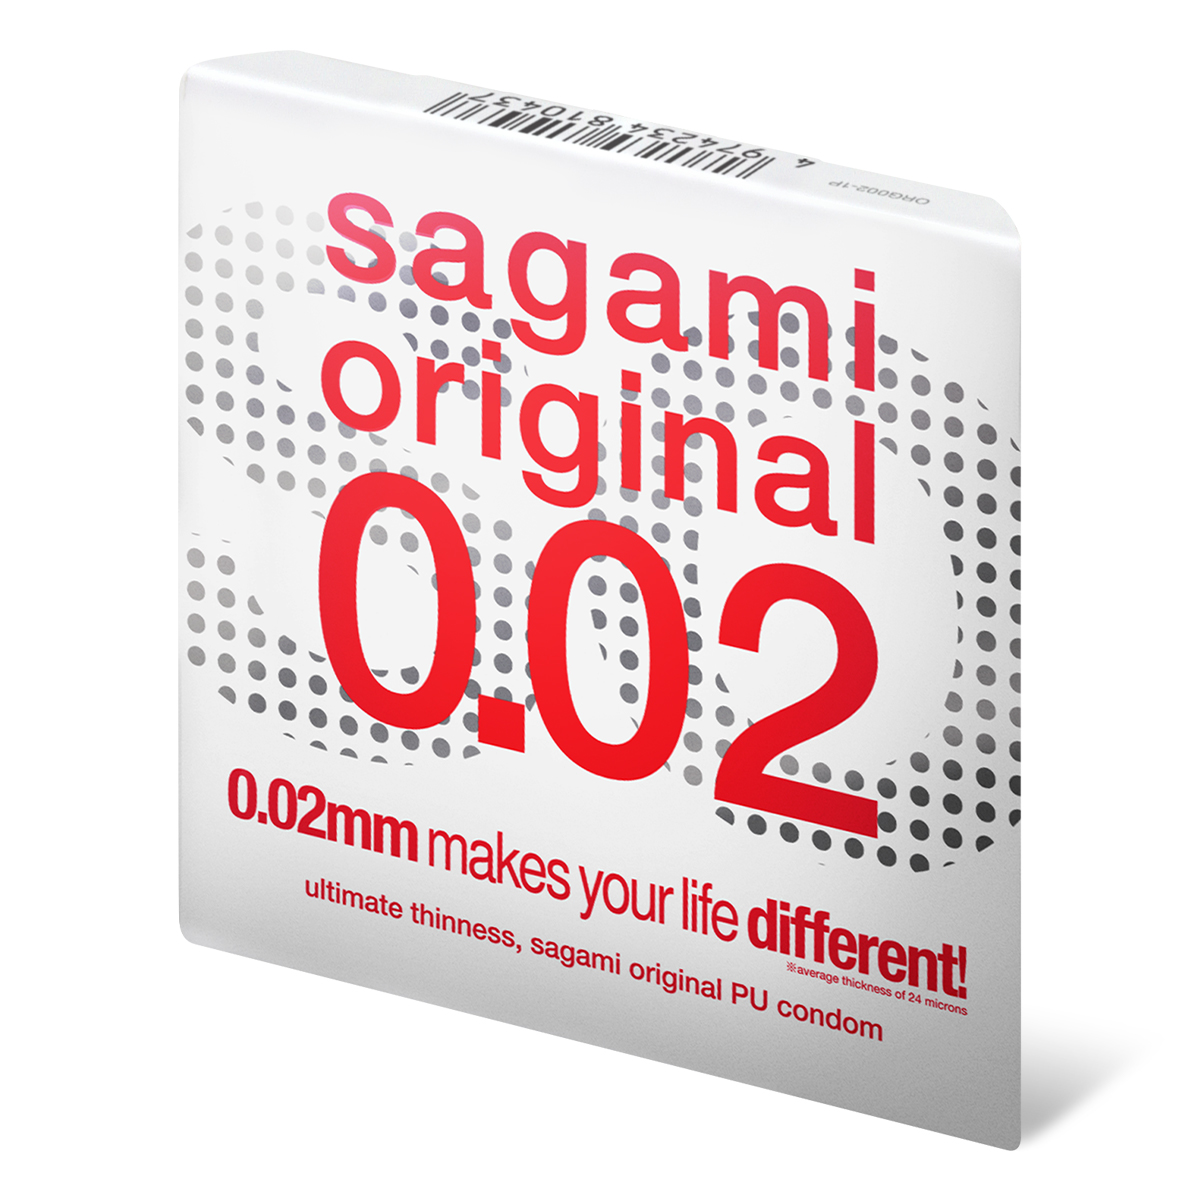 Sagami Original 0.02 1's Pack PU Condom-p_1